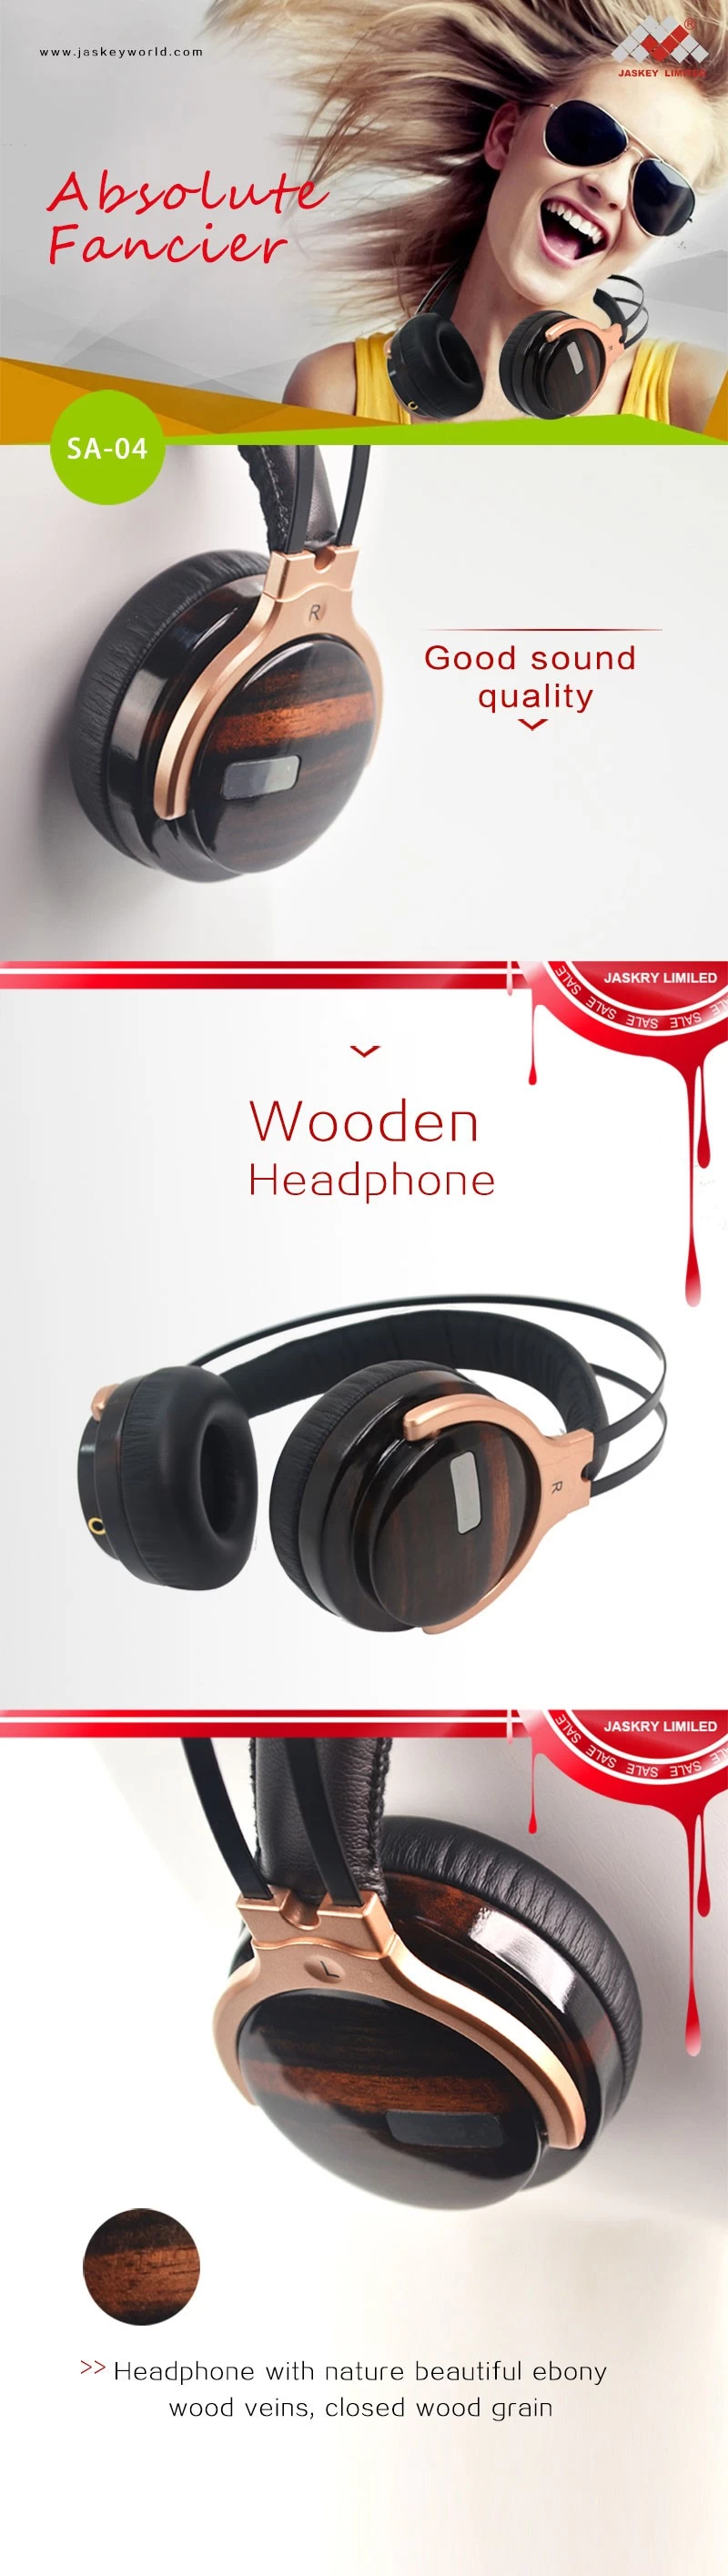 For Woodworking Headphones